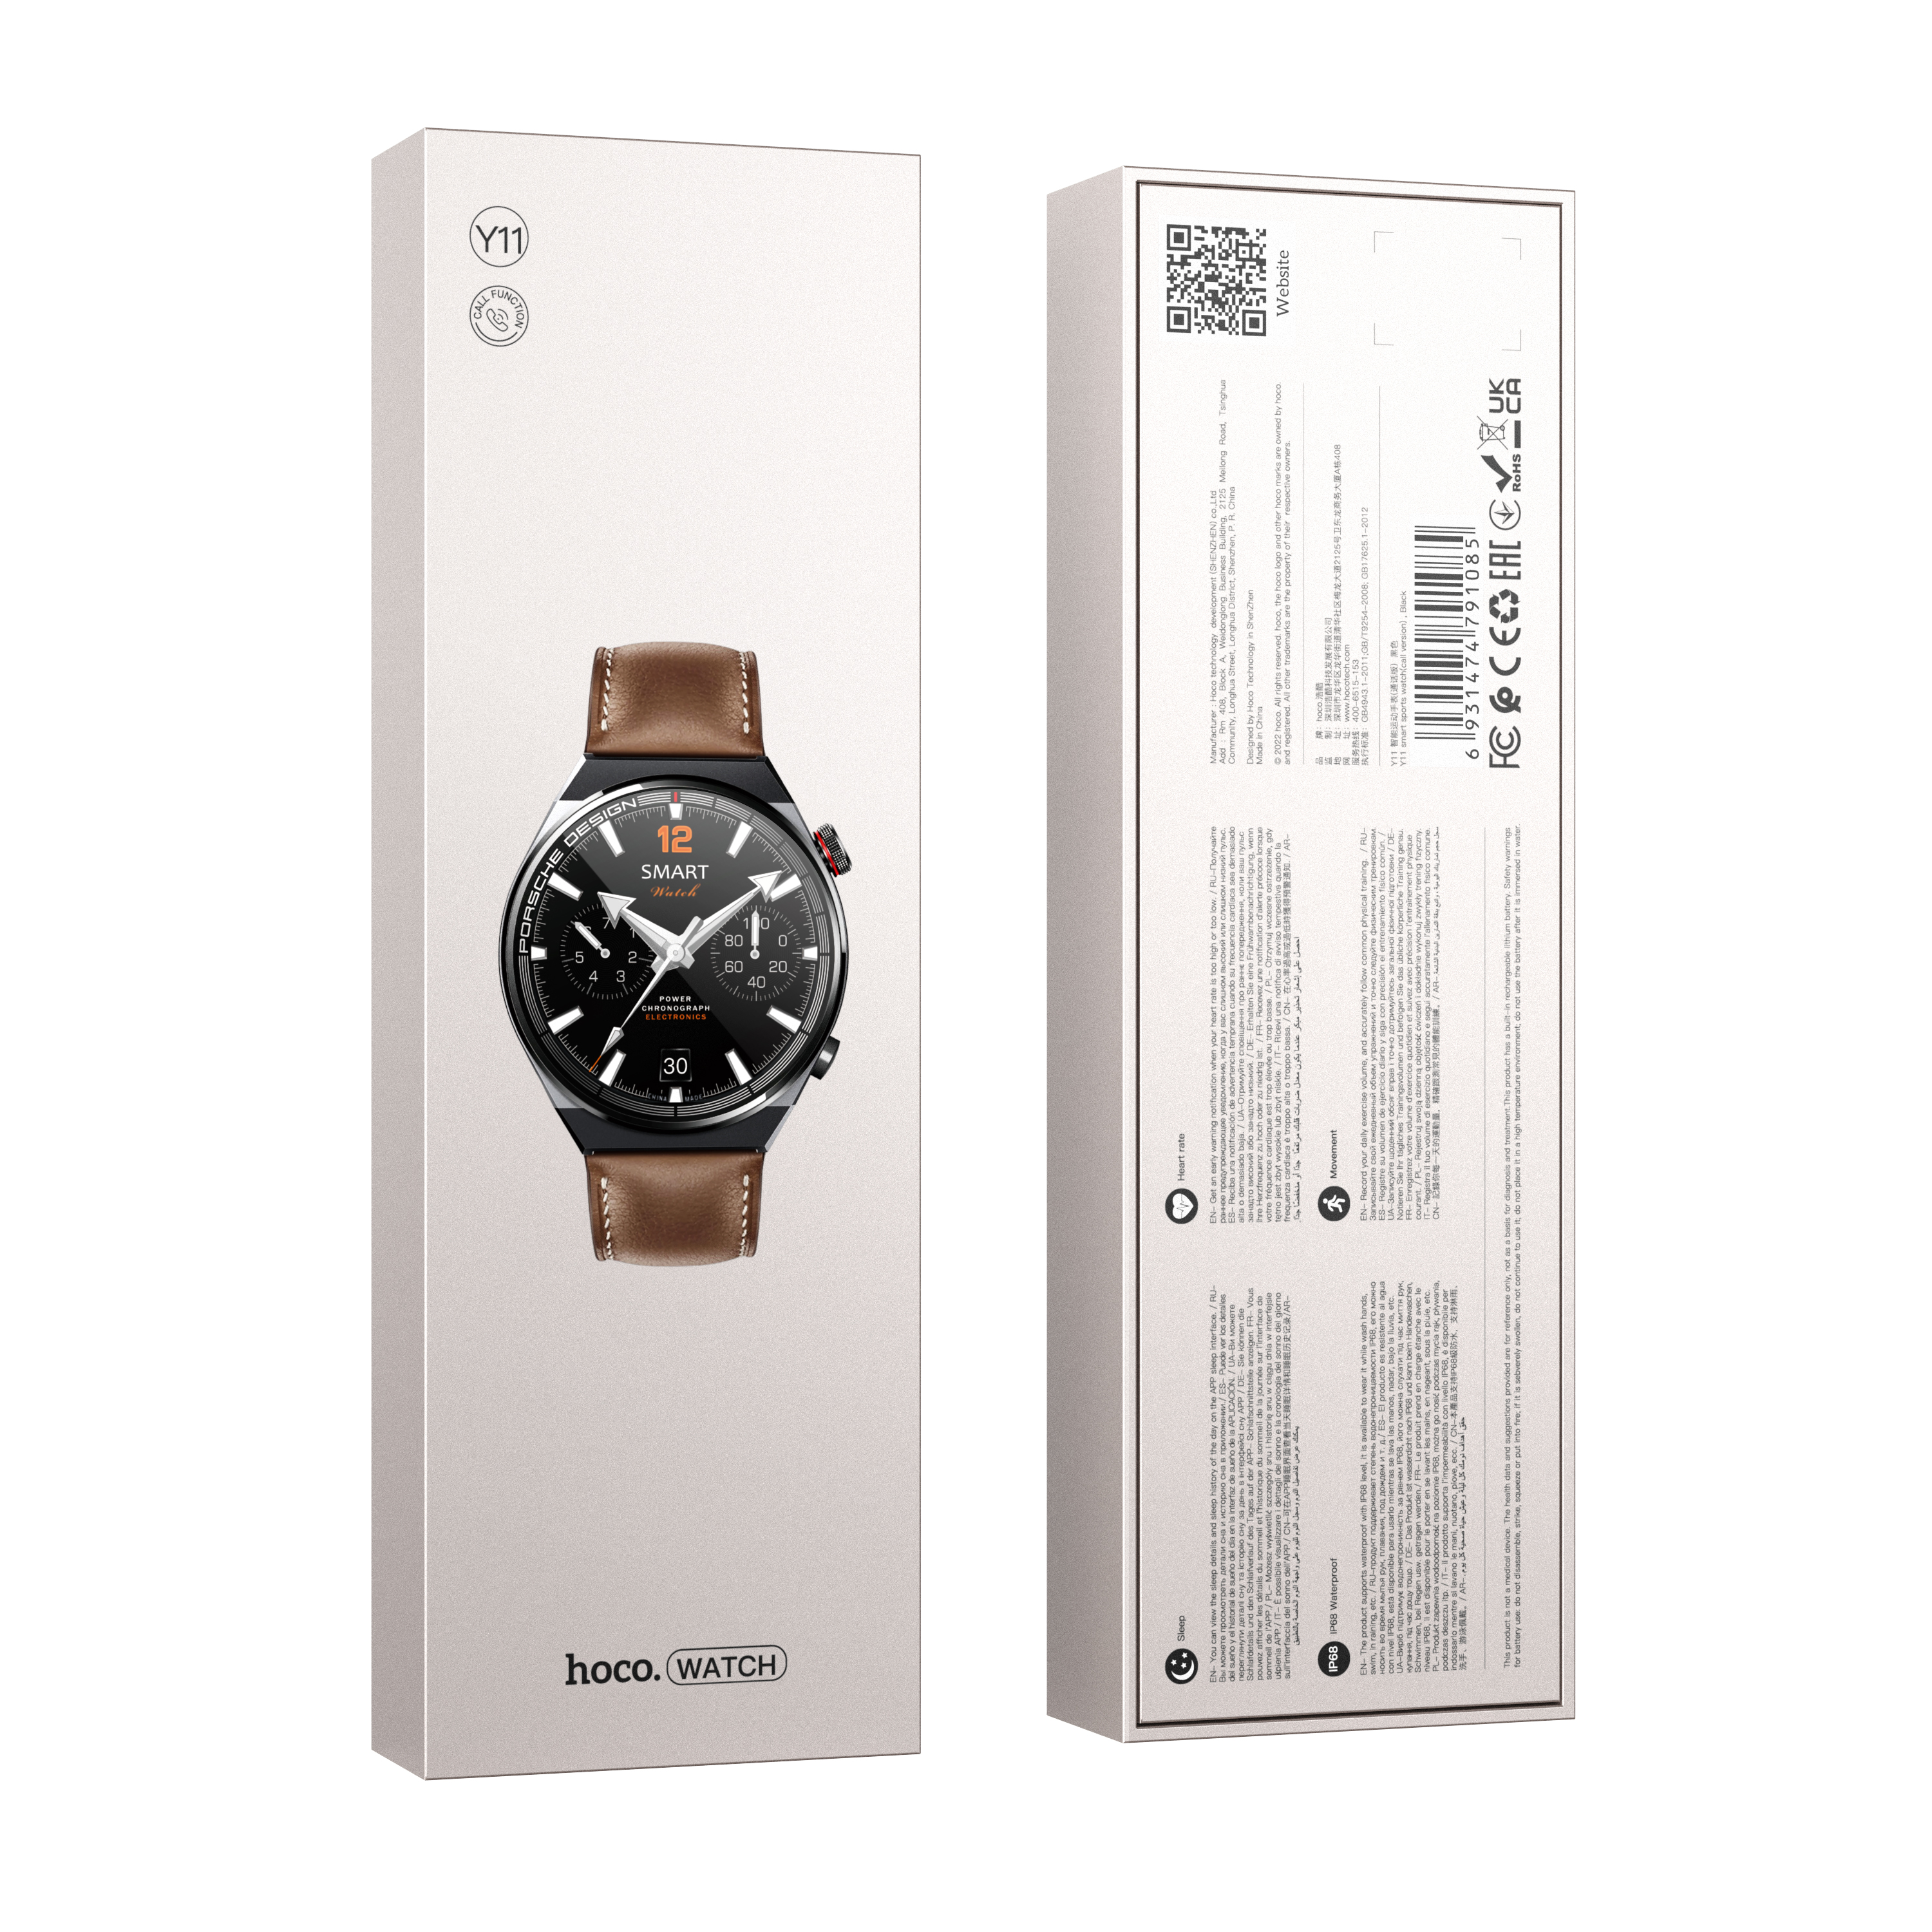 Smart часы Hoco Y11, черный (поддержка звонков)